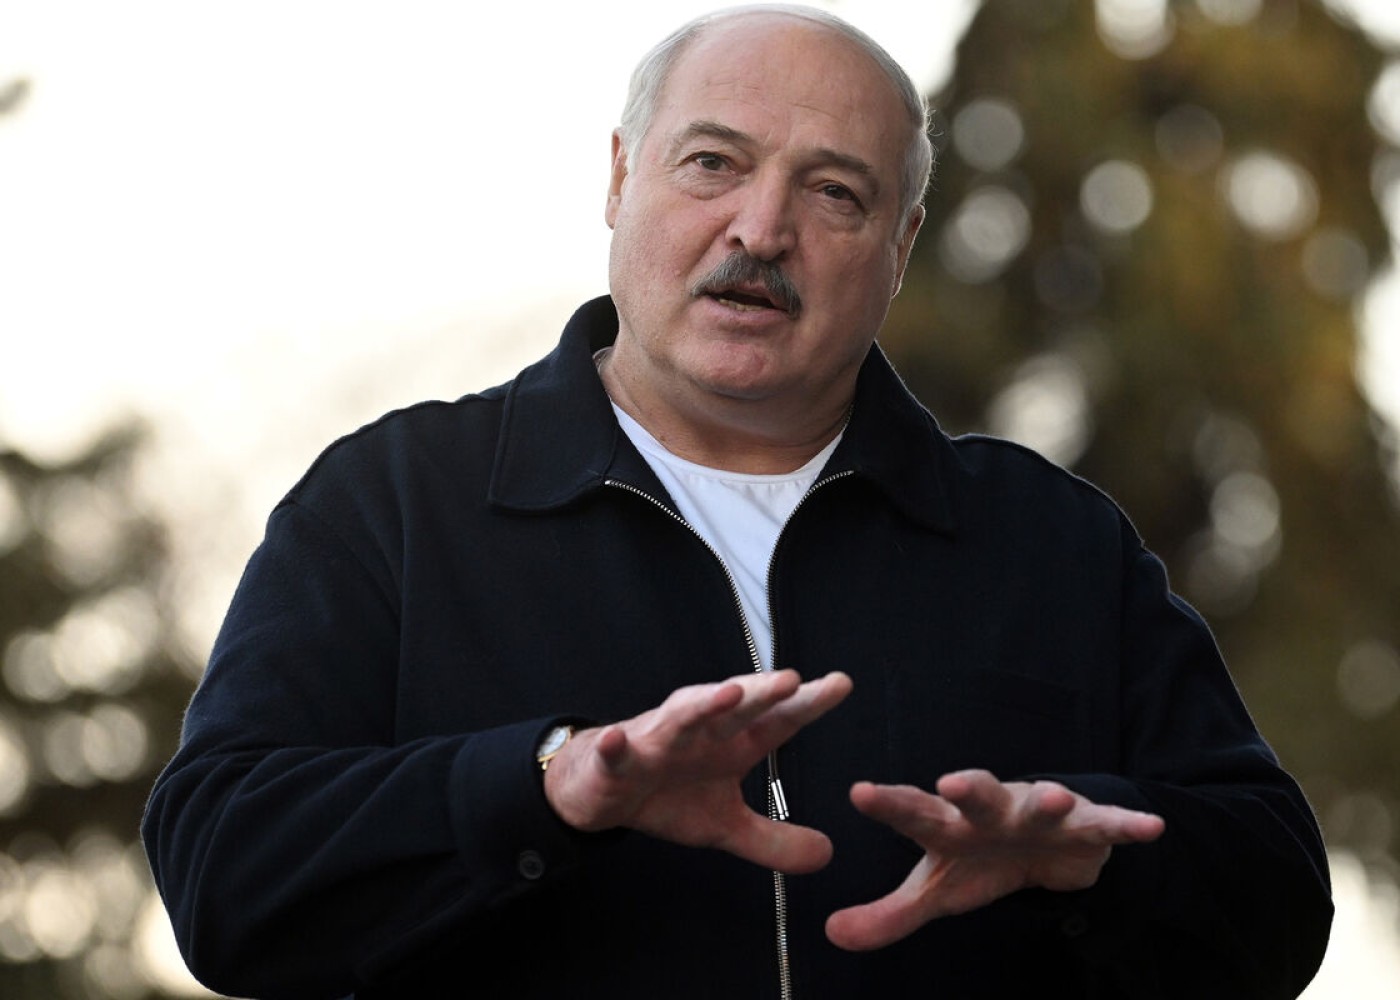 "Dollar və avro lazımsız valyutalardır" -Lukaşenko